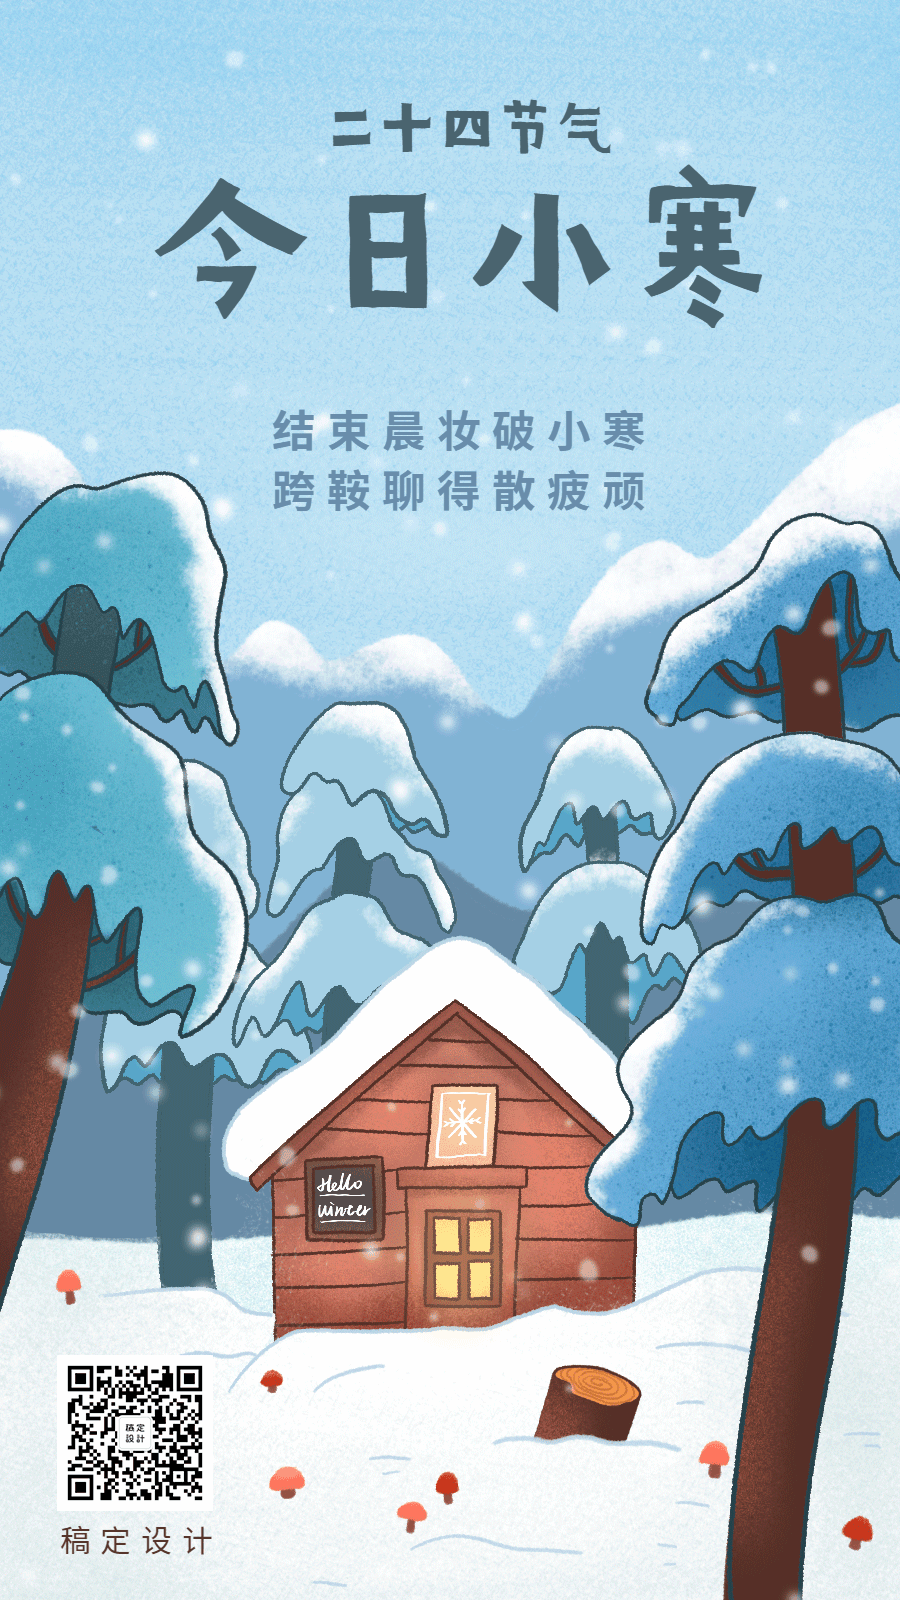 小寒森林小屋下雪卡通动态海报